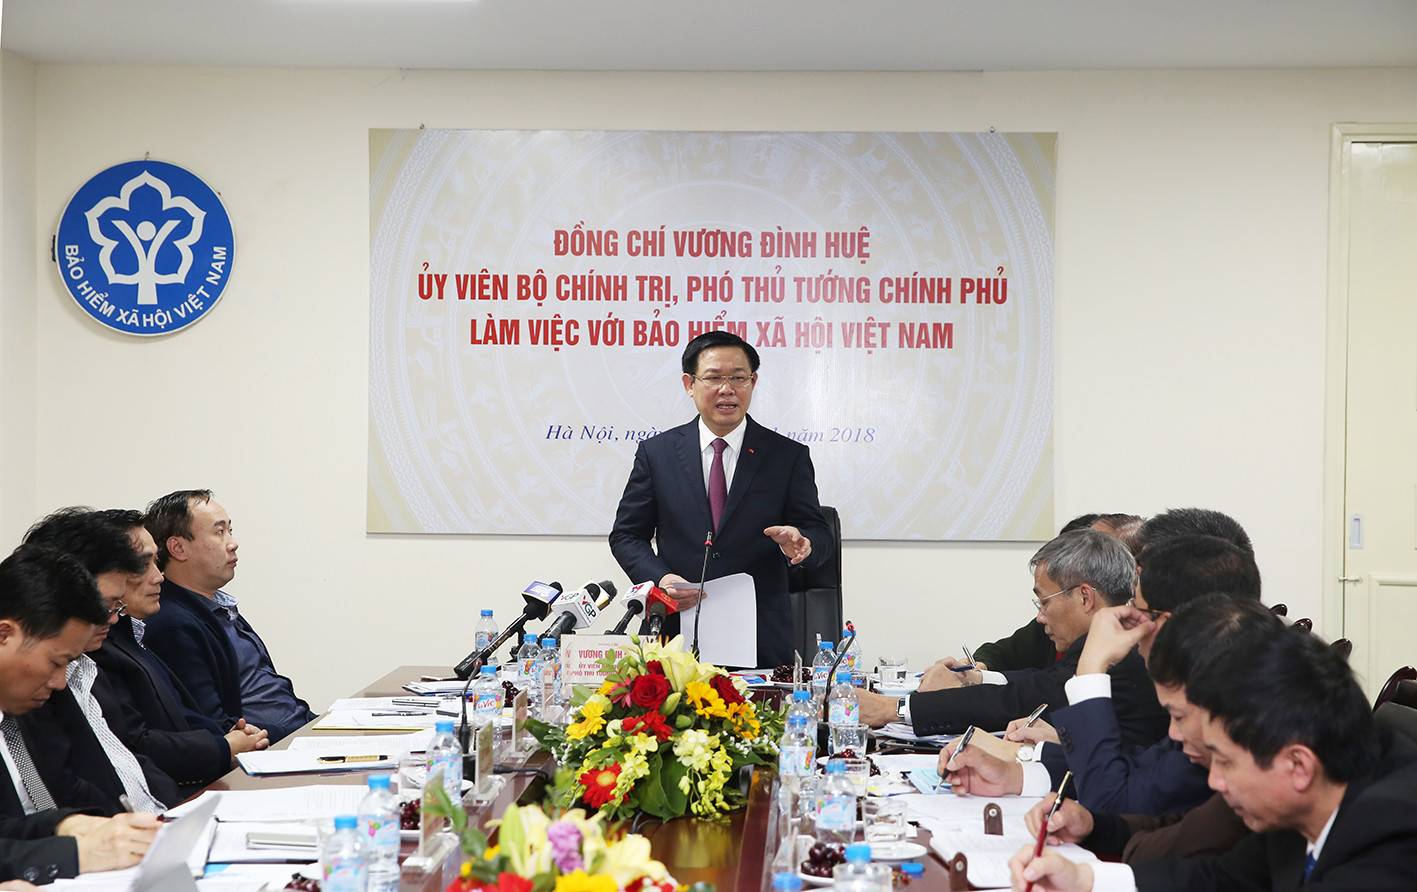 Phó Thủ tướng Vương Đình Huệ làm việc với Bảo hiểm xã hội Việt Nam